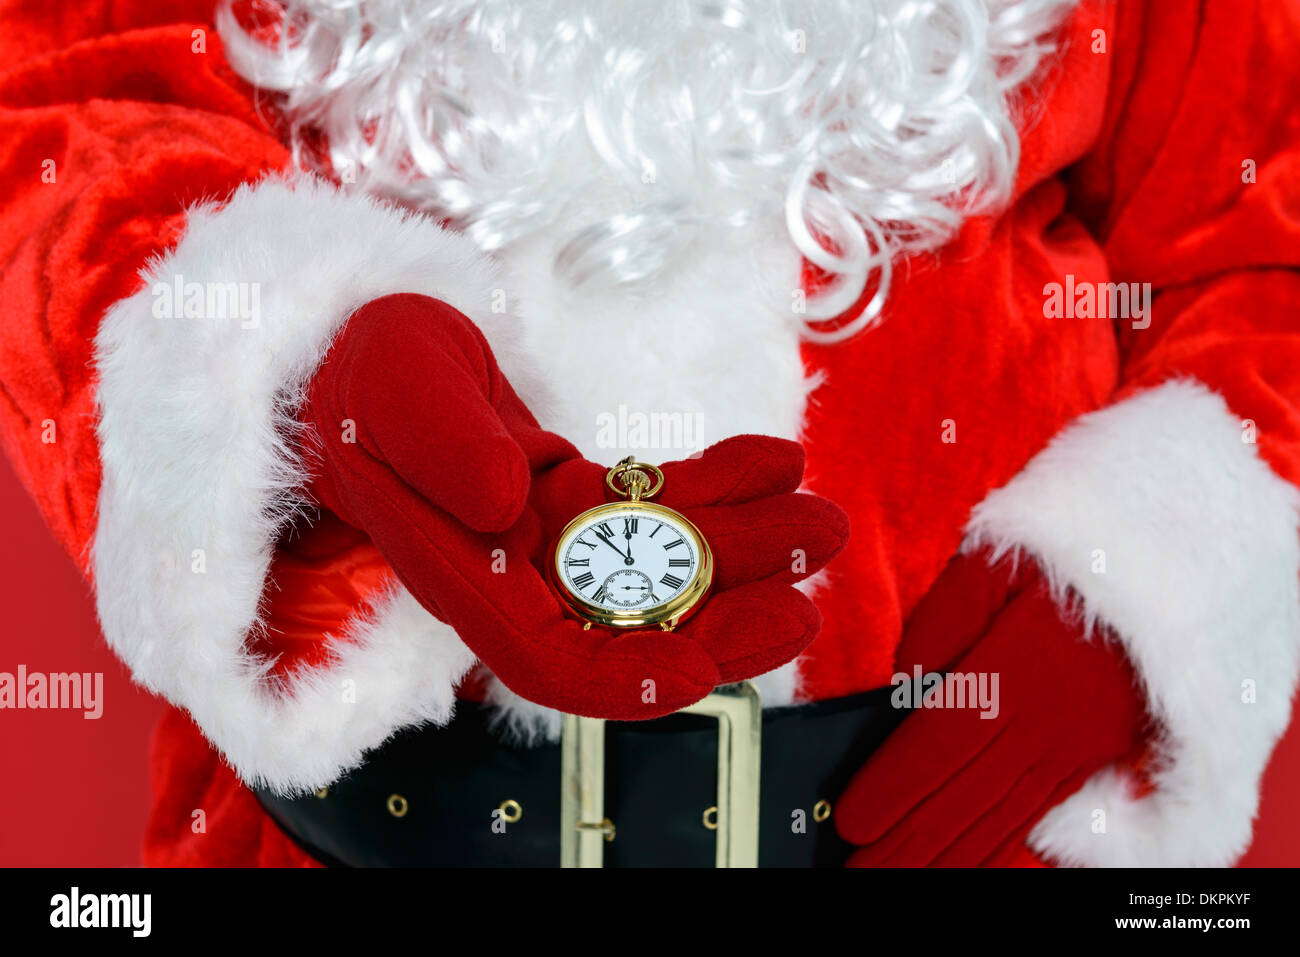 Nikolaus oder Weihnachtsmann überprüft seine goldene Taschenuhr zu sehen, ob es pünktlich zu Weihnachten ist. Stockfoto